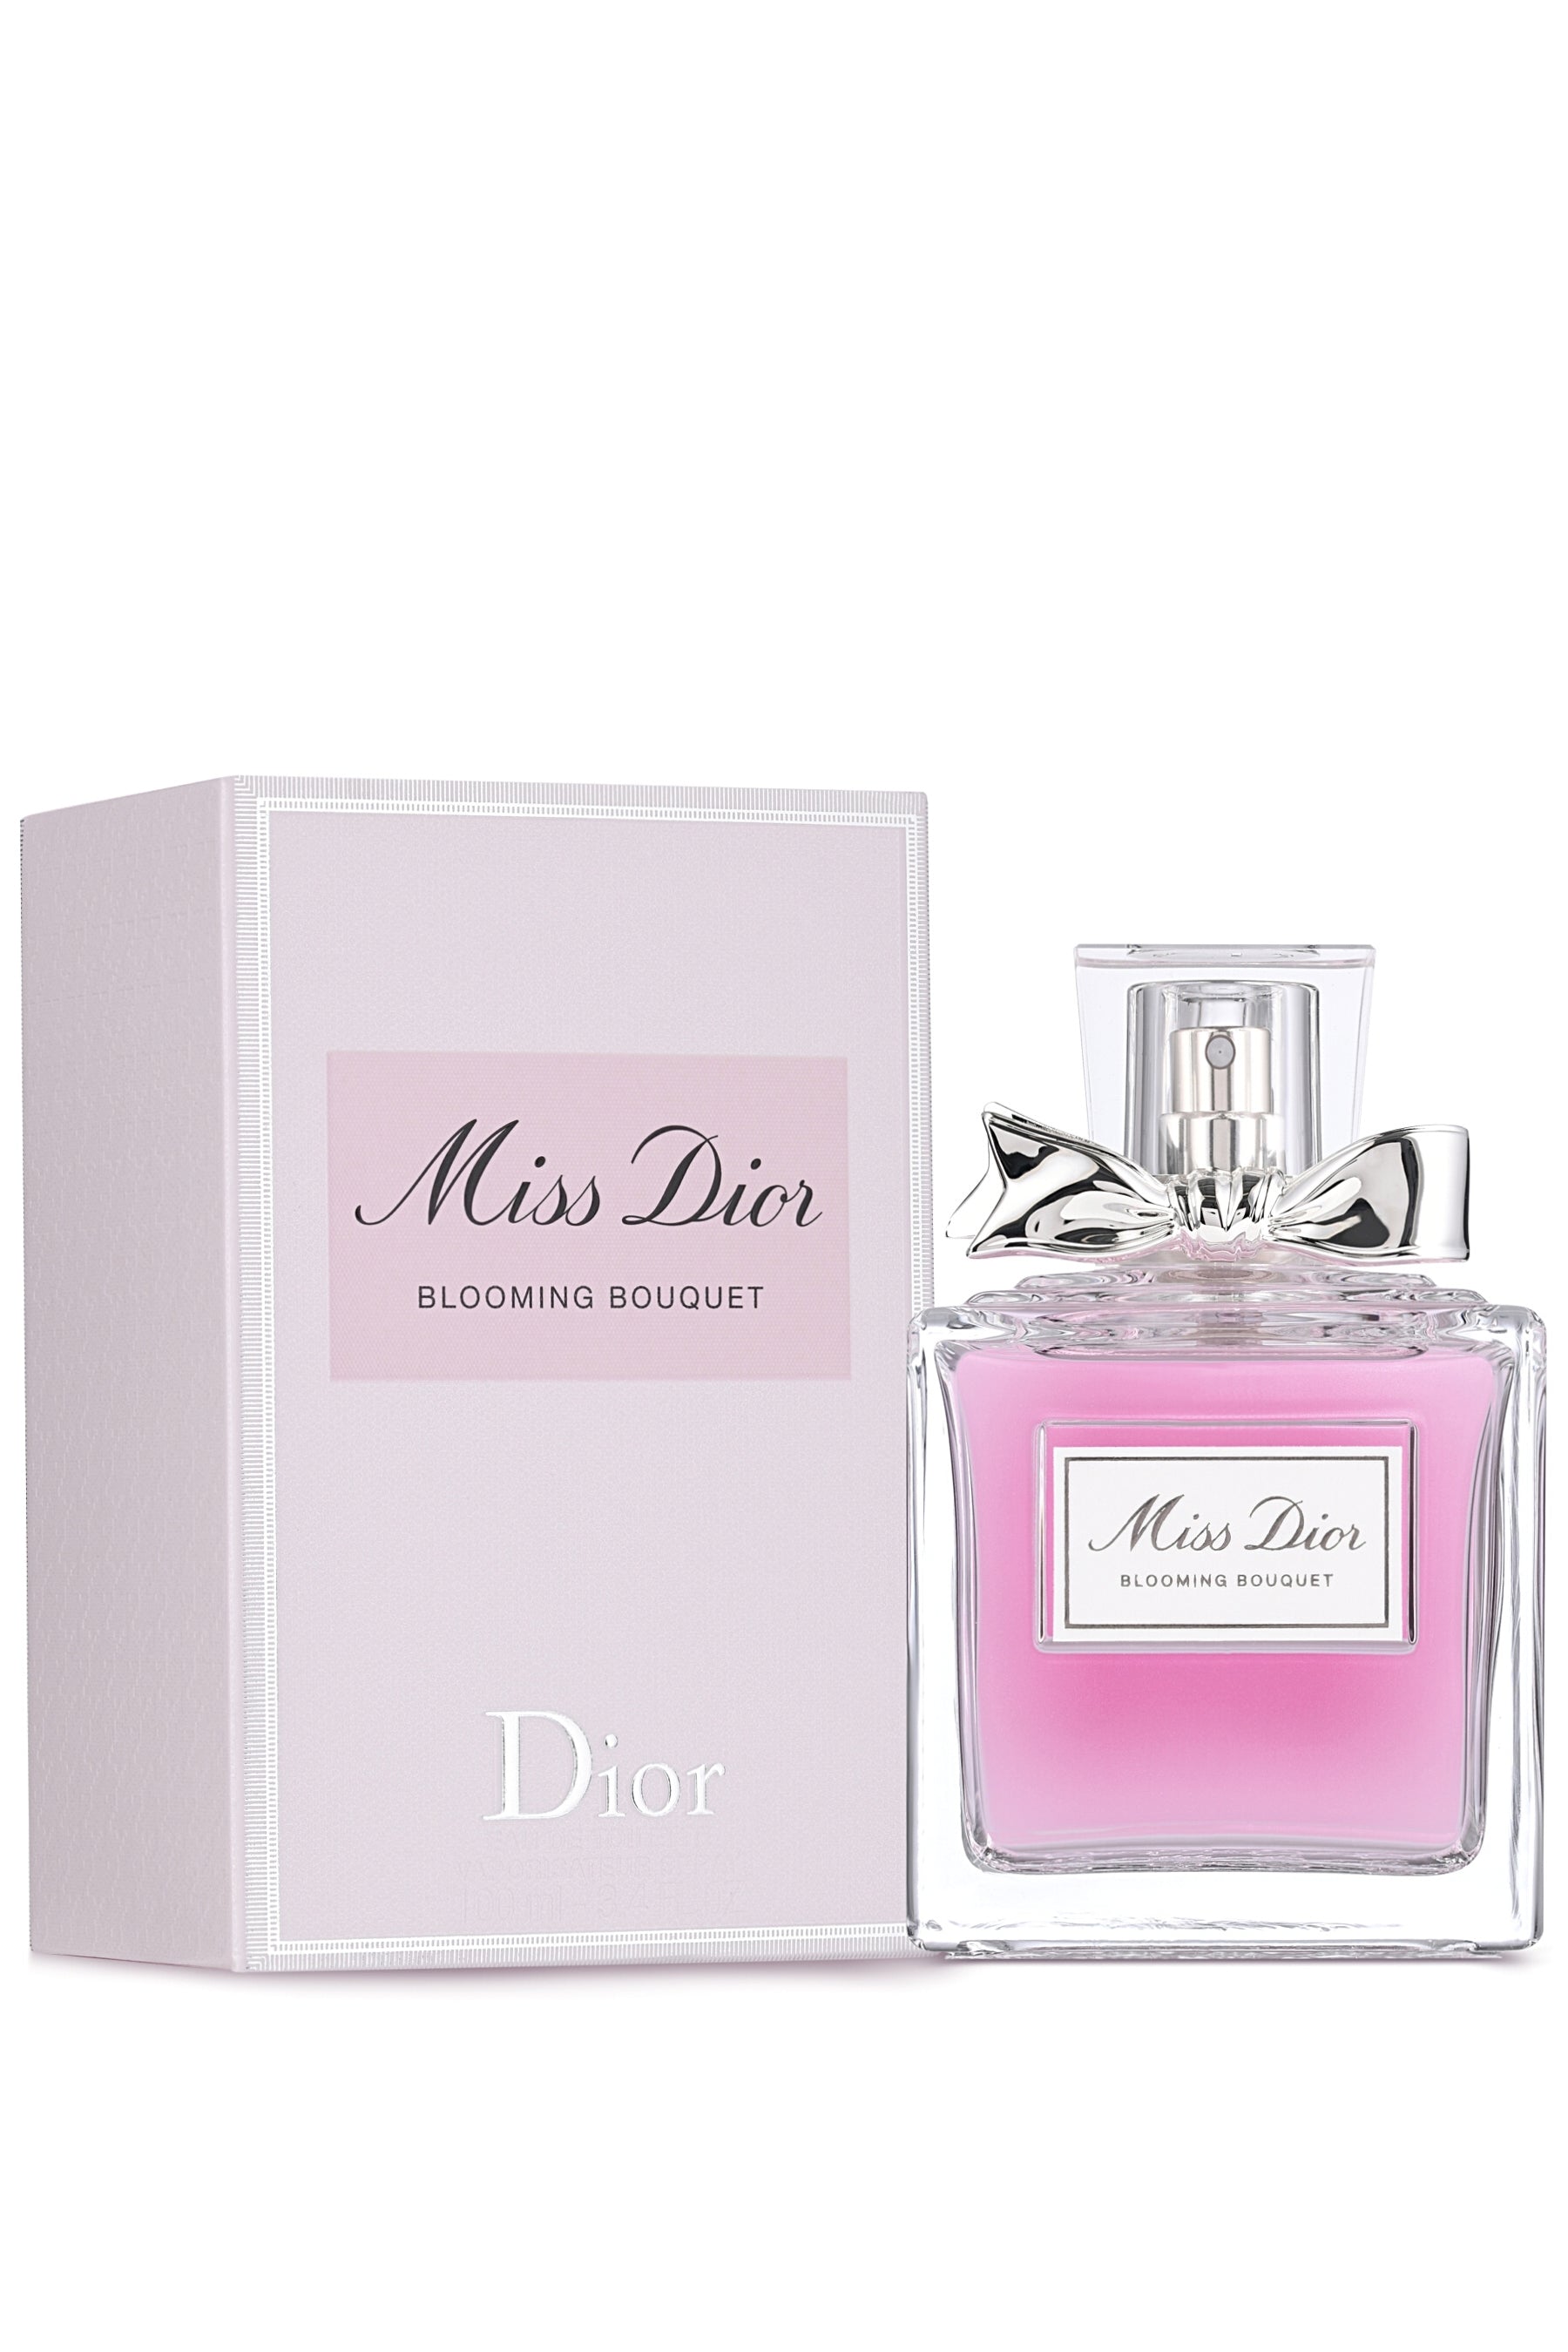 Nước hoa nữ Miss Dior Rose NRoses Chính hãng